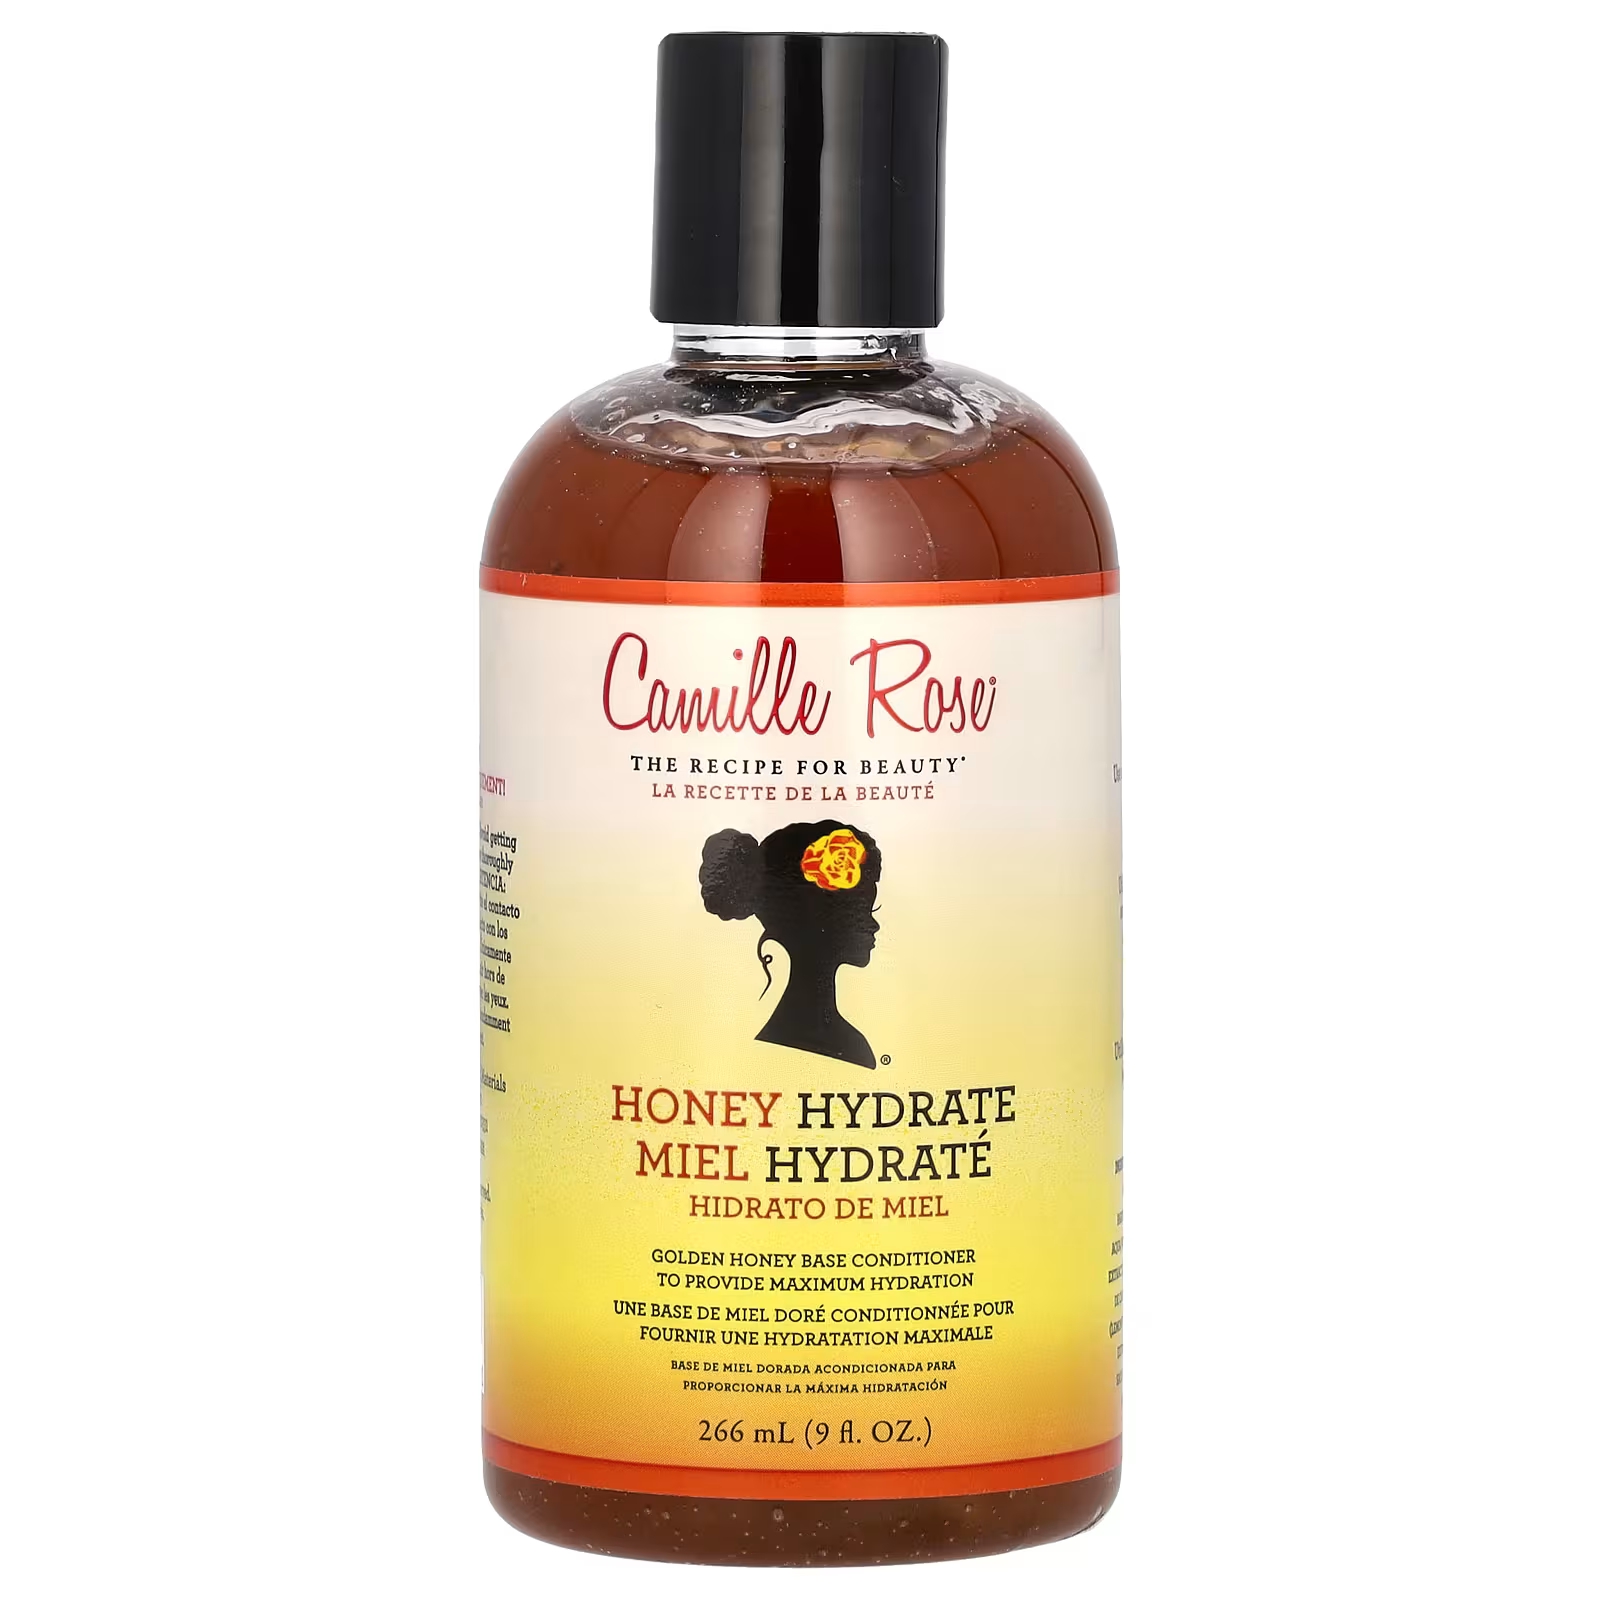 Средства для укладки волос Camille Rose Honey Hydrate несмываемая коллекция № 3, 266 мл